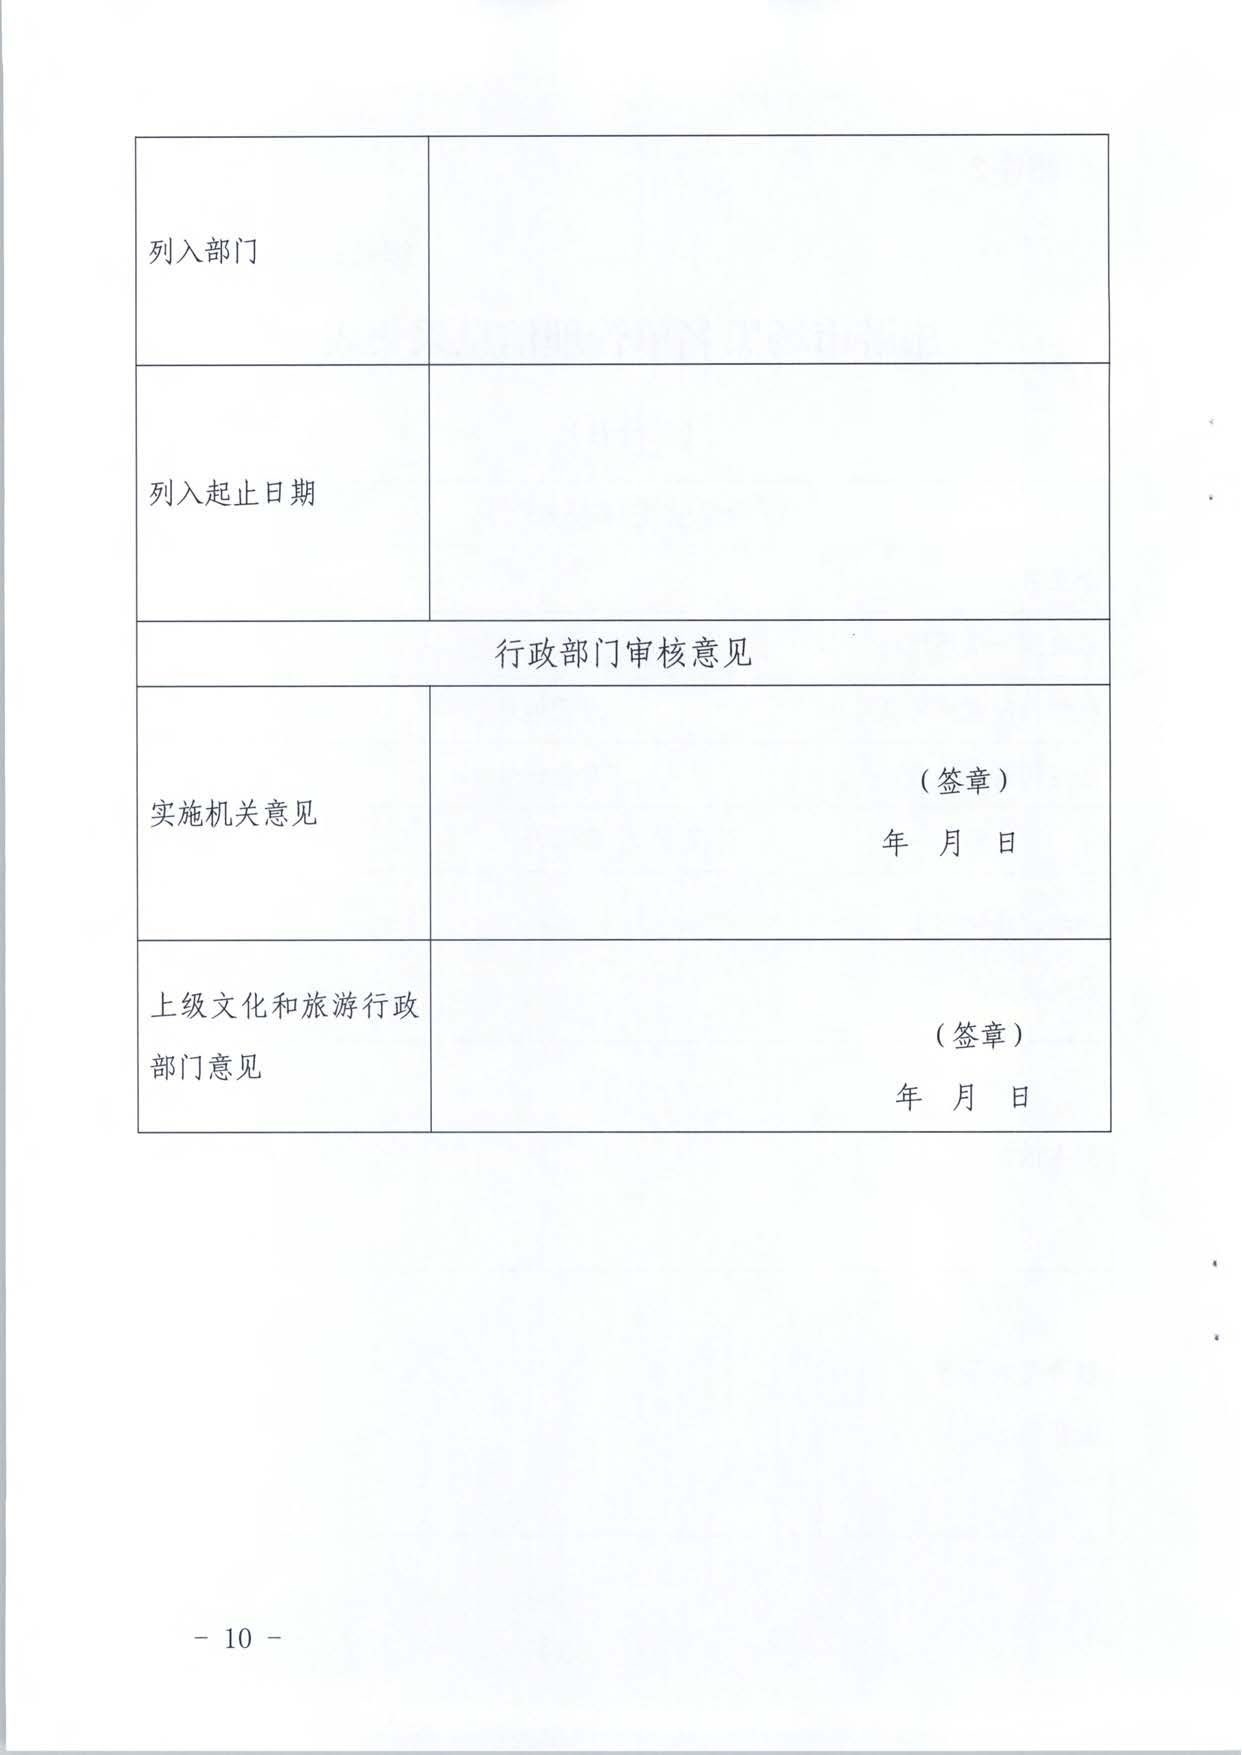 广东省文化和旅游厅关于推进文化和旅游市场信用修复工作的通知_页面_29.jpg